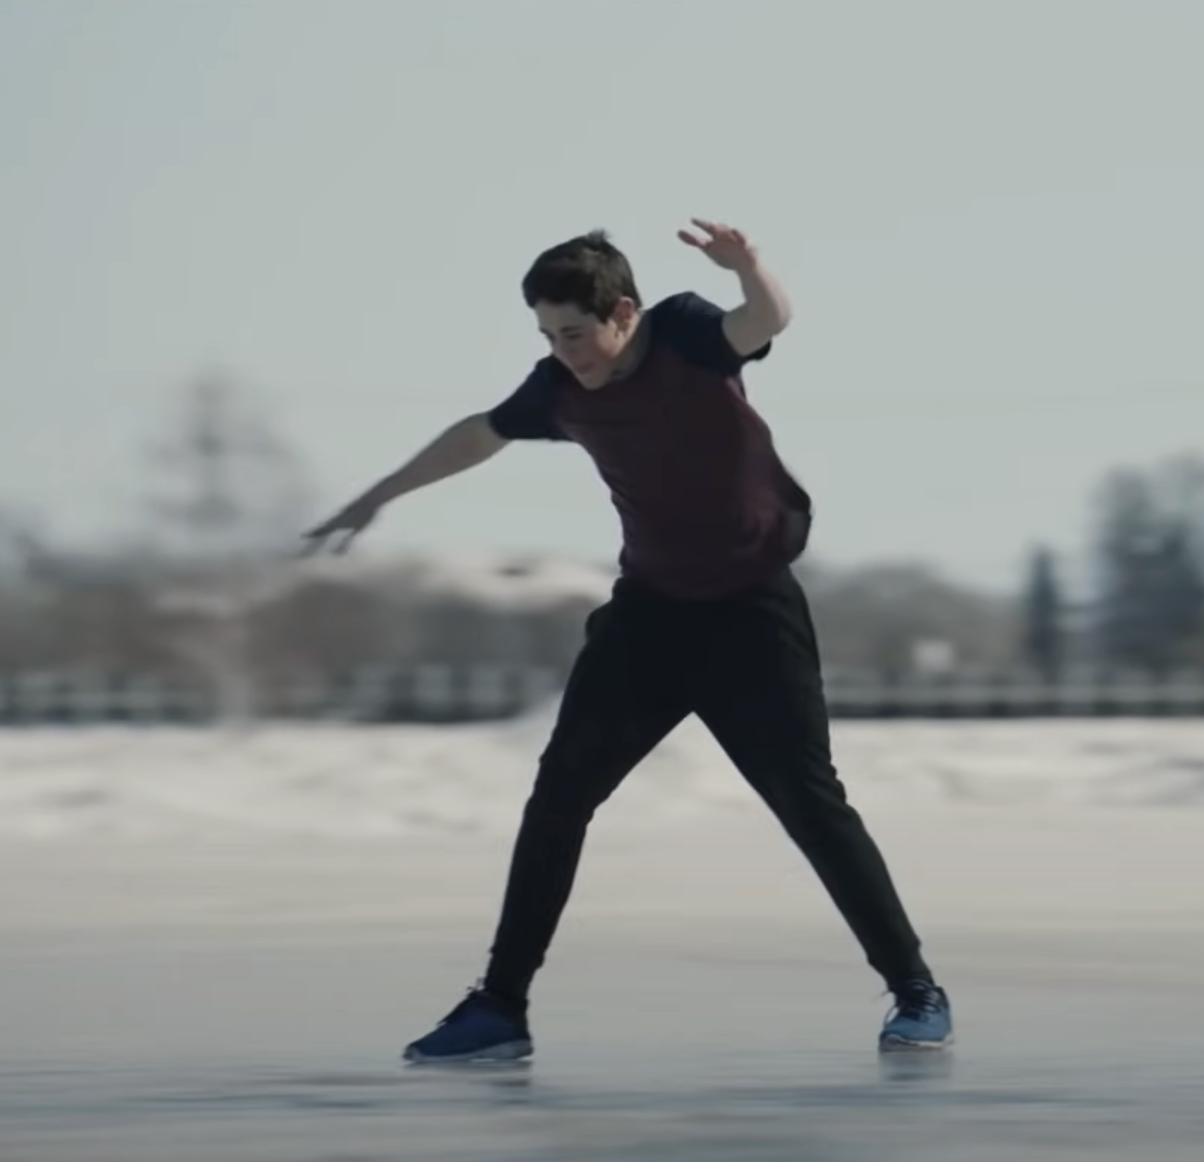 A man ice skating